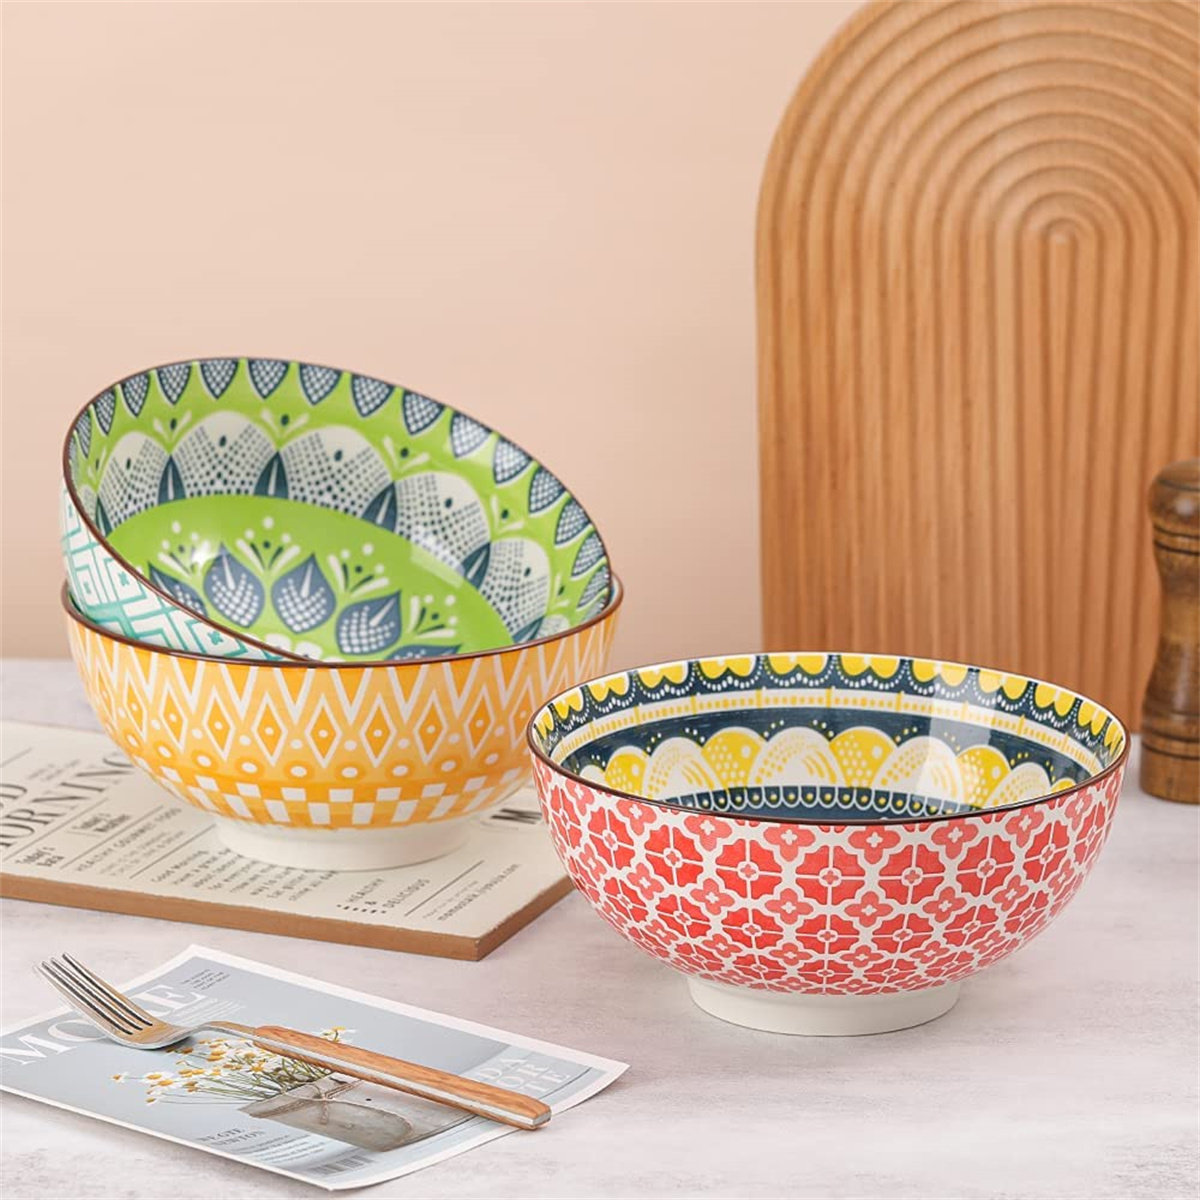 https://assets.wfcdn.com/im/30347715/compr-r85/2487/248796704/porcelain-large-serving-bowls-salad-soup-noodle-ramen-bowls-big-cereal-pasta-bowl-set-3-pack-large-capacity-ceramic-bowl-sets-microwave-dishwasher-safe.jpg